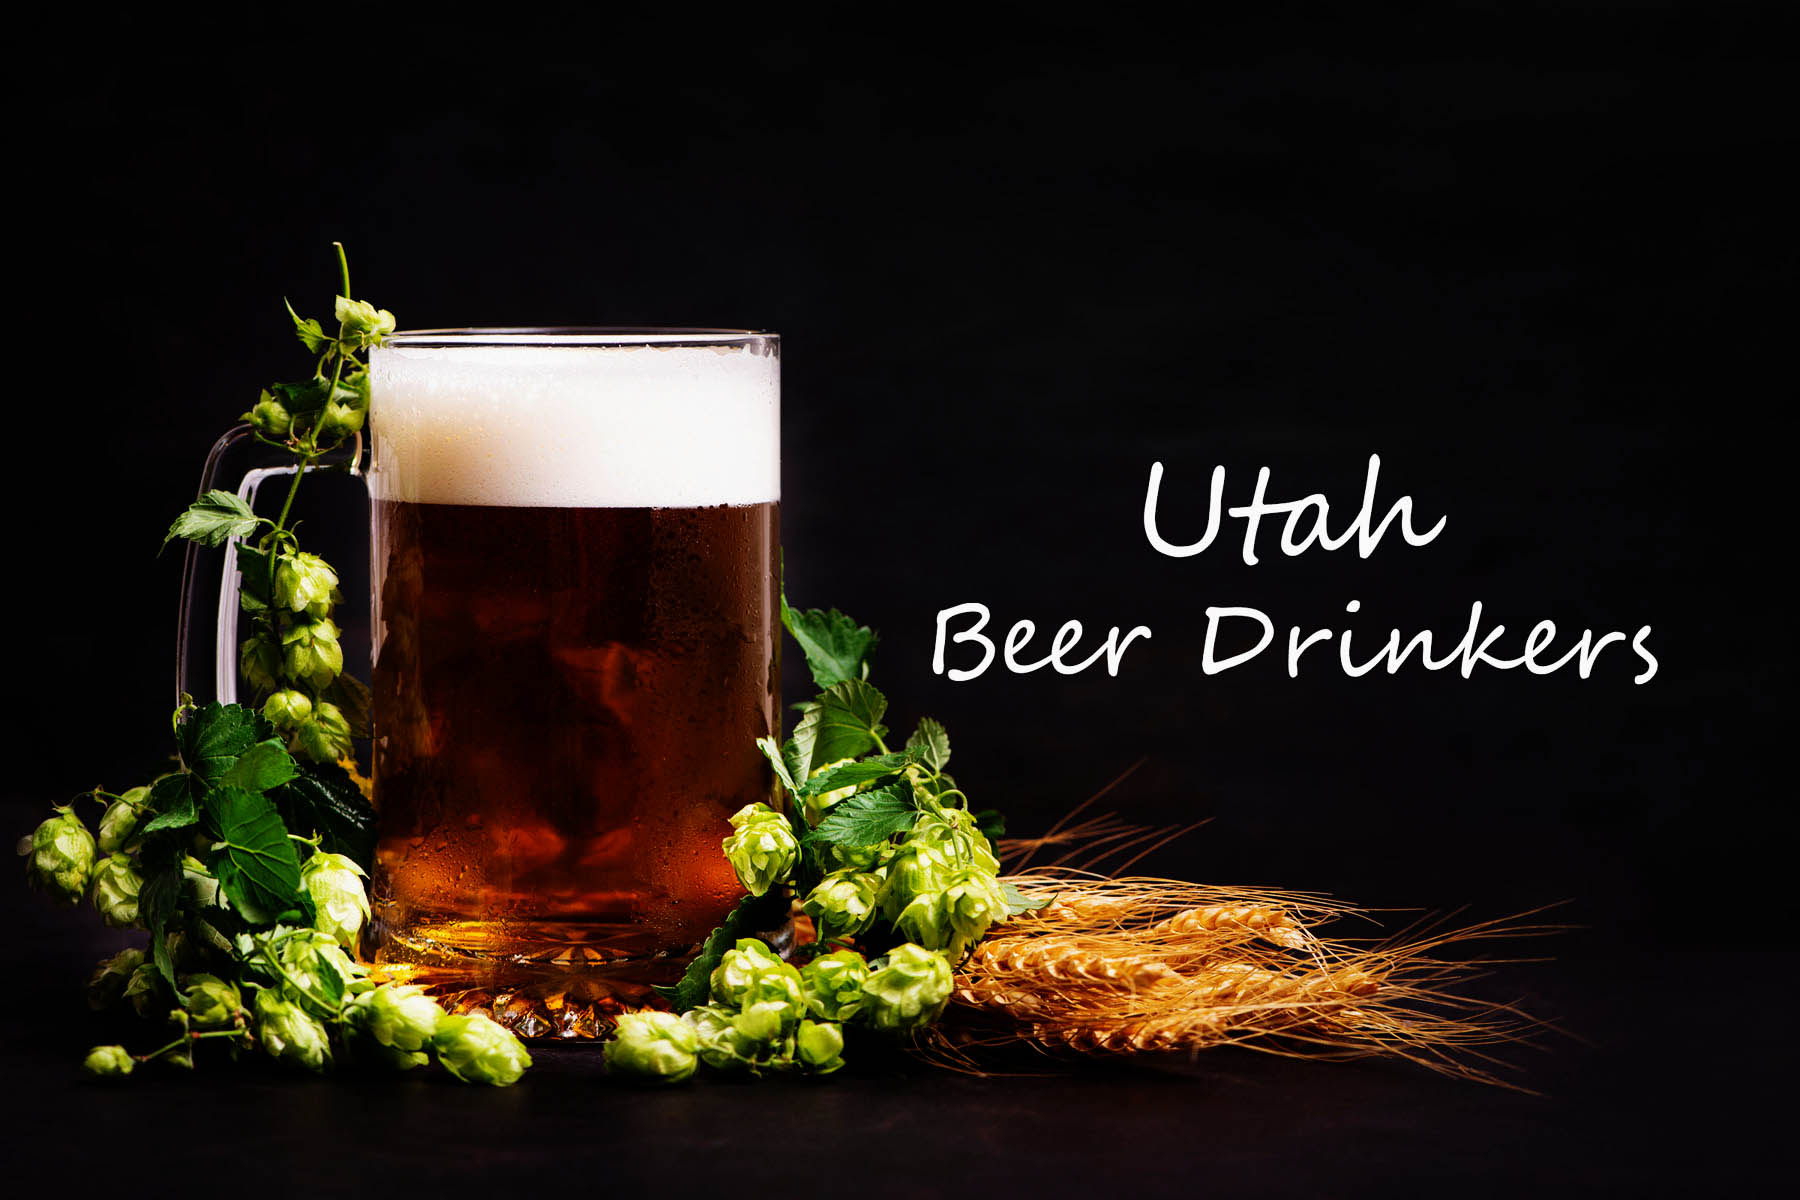 Utah Beer Drinkers